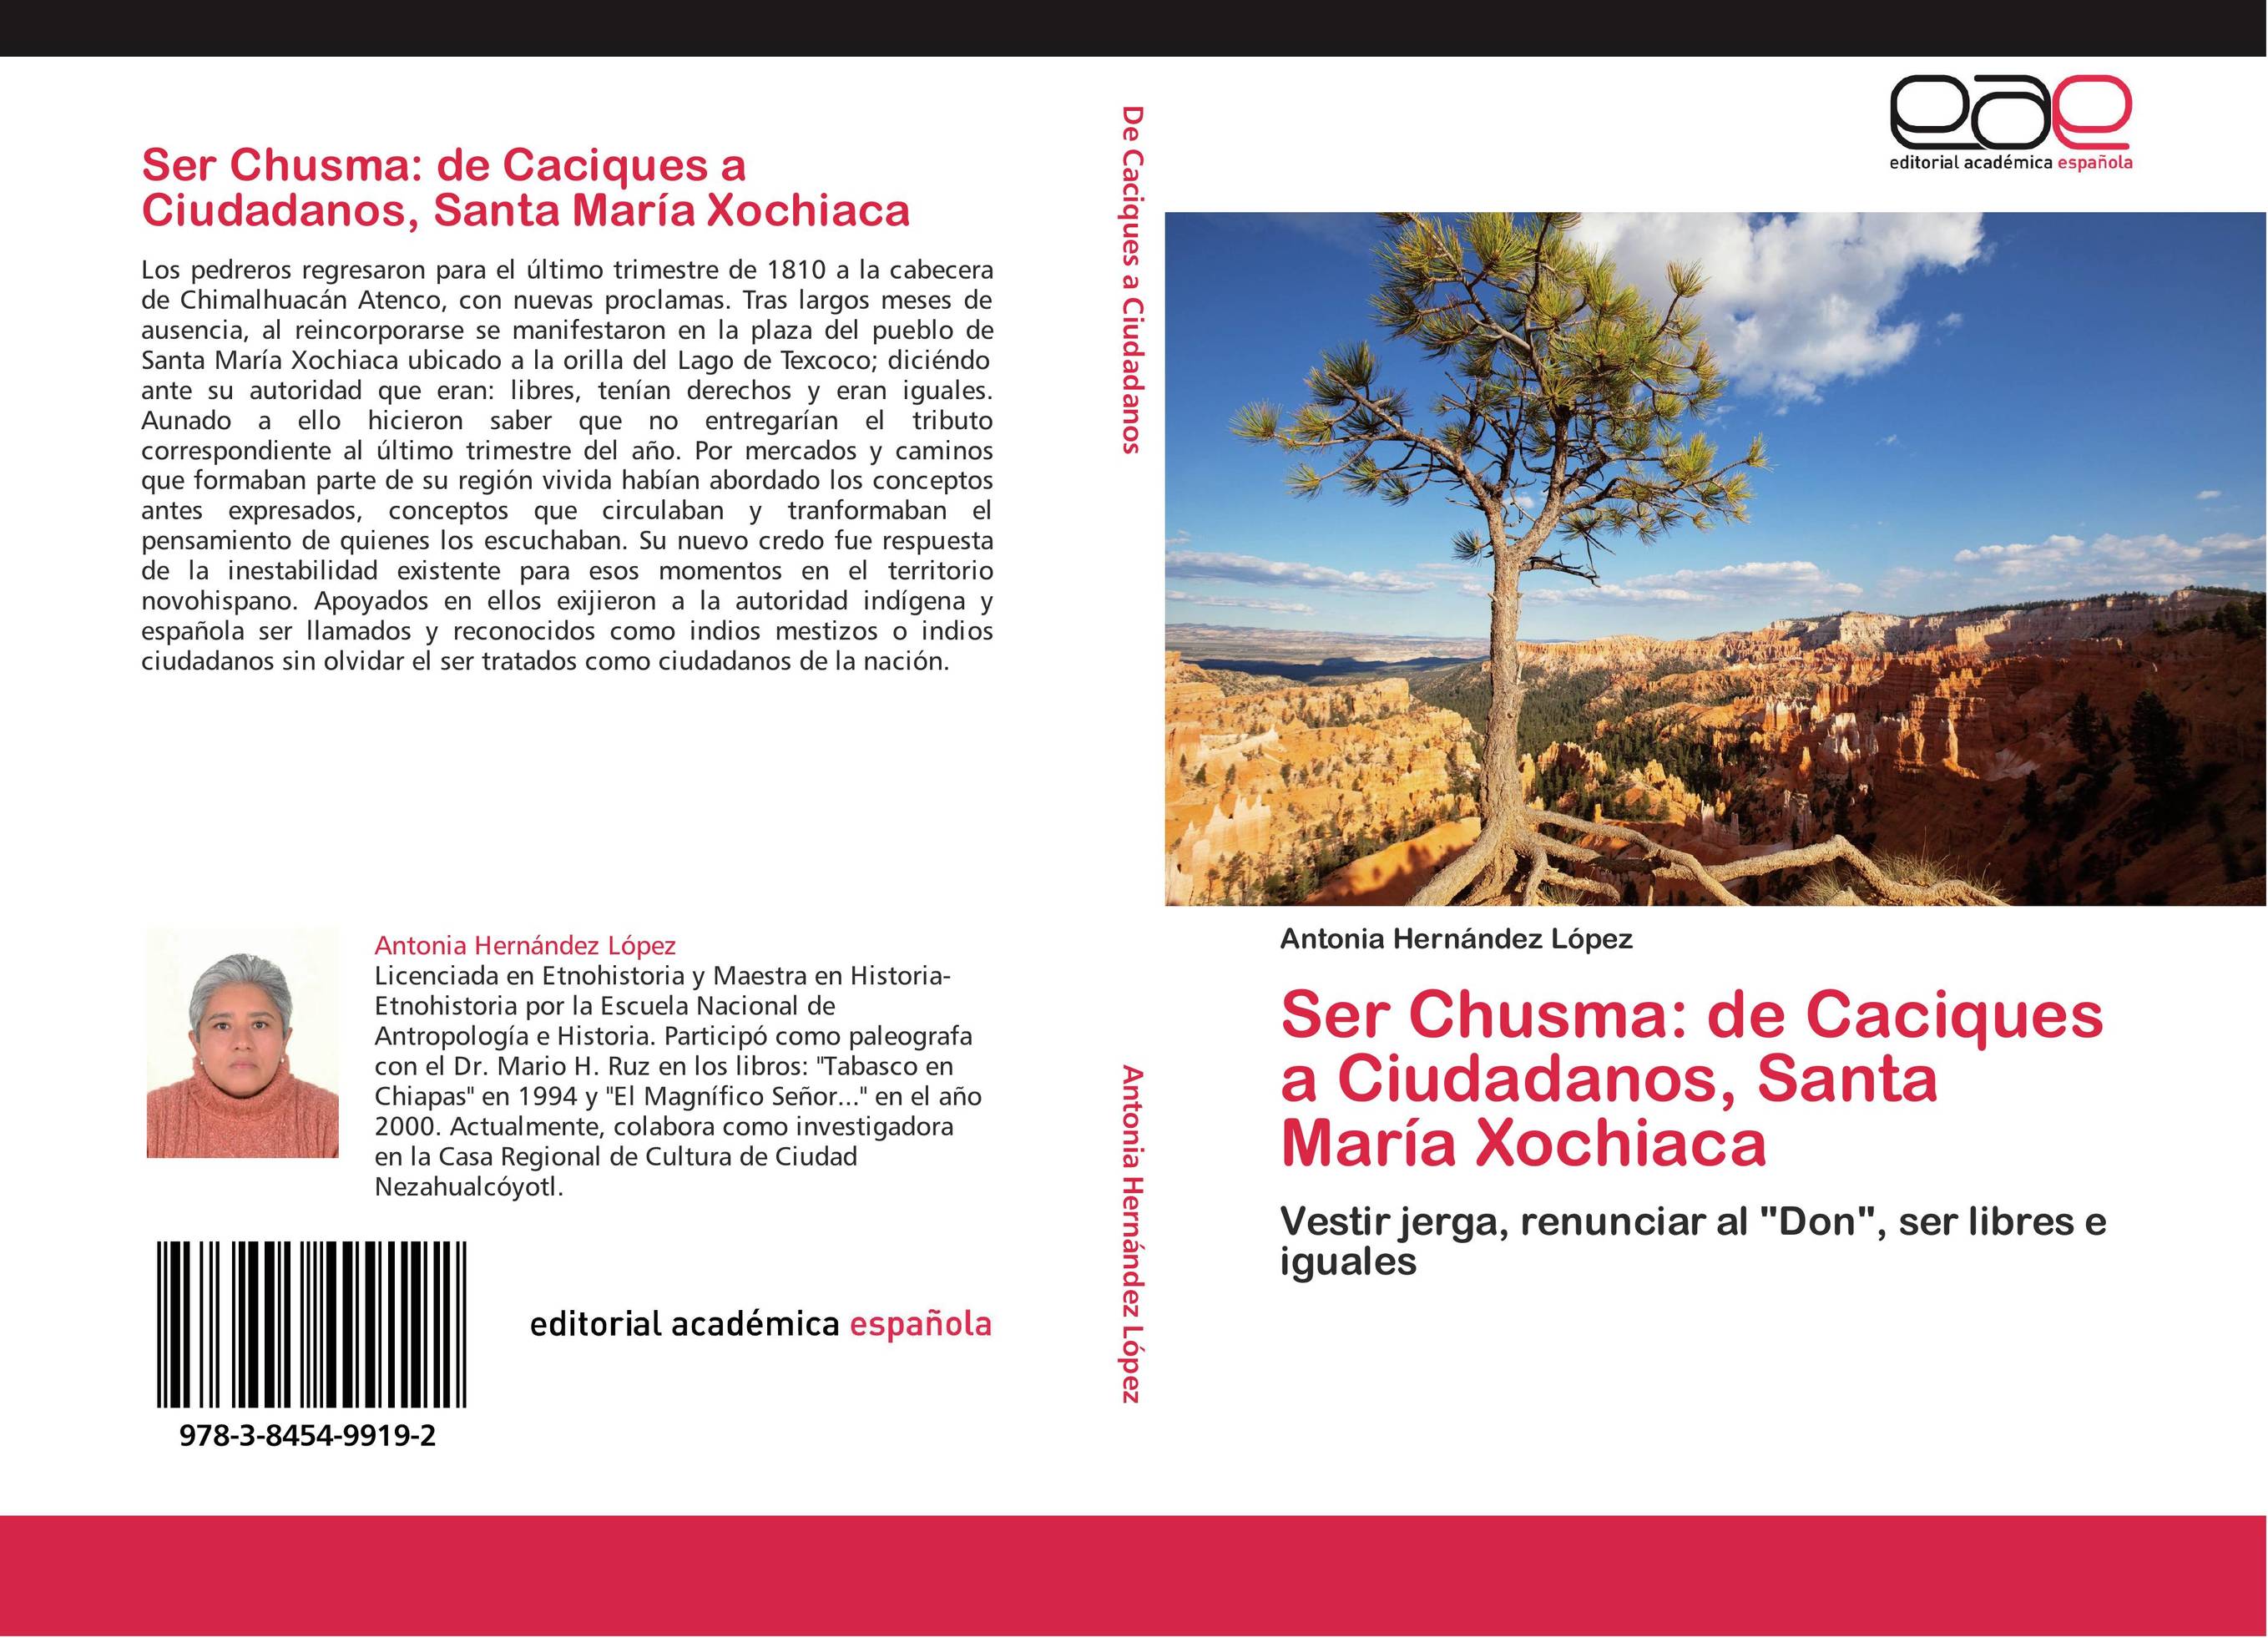 Ser Chusma: de Caciques a Ciudadanos, Santa María Xochiaca